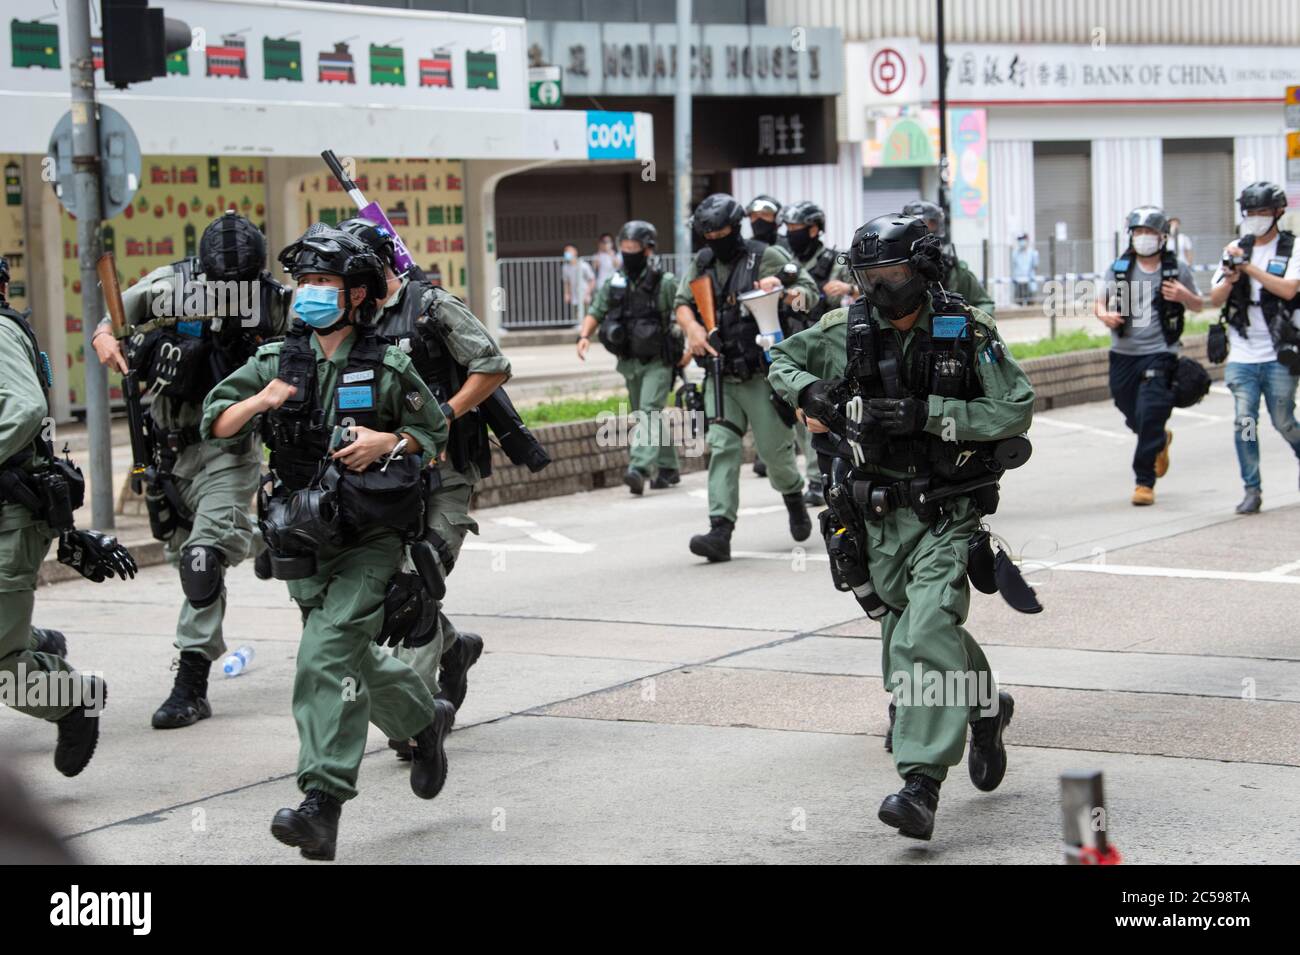 HONG KONG, Hong KONG RAE, CHINA: 1 DE JULIO de 2020.la policía se ocupa de la marcha de protesta ilegal cobrando y disparando bolas de pimienta.Hong Kong día de establecimiento de la Región Administrativa Especial. Veintitrés años después de que Gran Bretaña devolviese a Hong Kong al gobierno chino, Beijing está presionando para implementar nuevas leyes de seguridad nacional duras que suprimirán las protestas pro-democracia que se ven en la ciudad. Romperá la Declaración conjunta sino-británica, donde China aceptó el gobierno de un país, dos sistemas. La prohibición de las marchas tradicionales por primera vez ha enfurecido al público. Alamy Liv Foto de stock